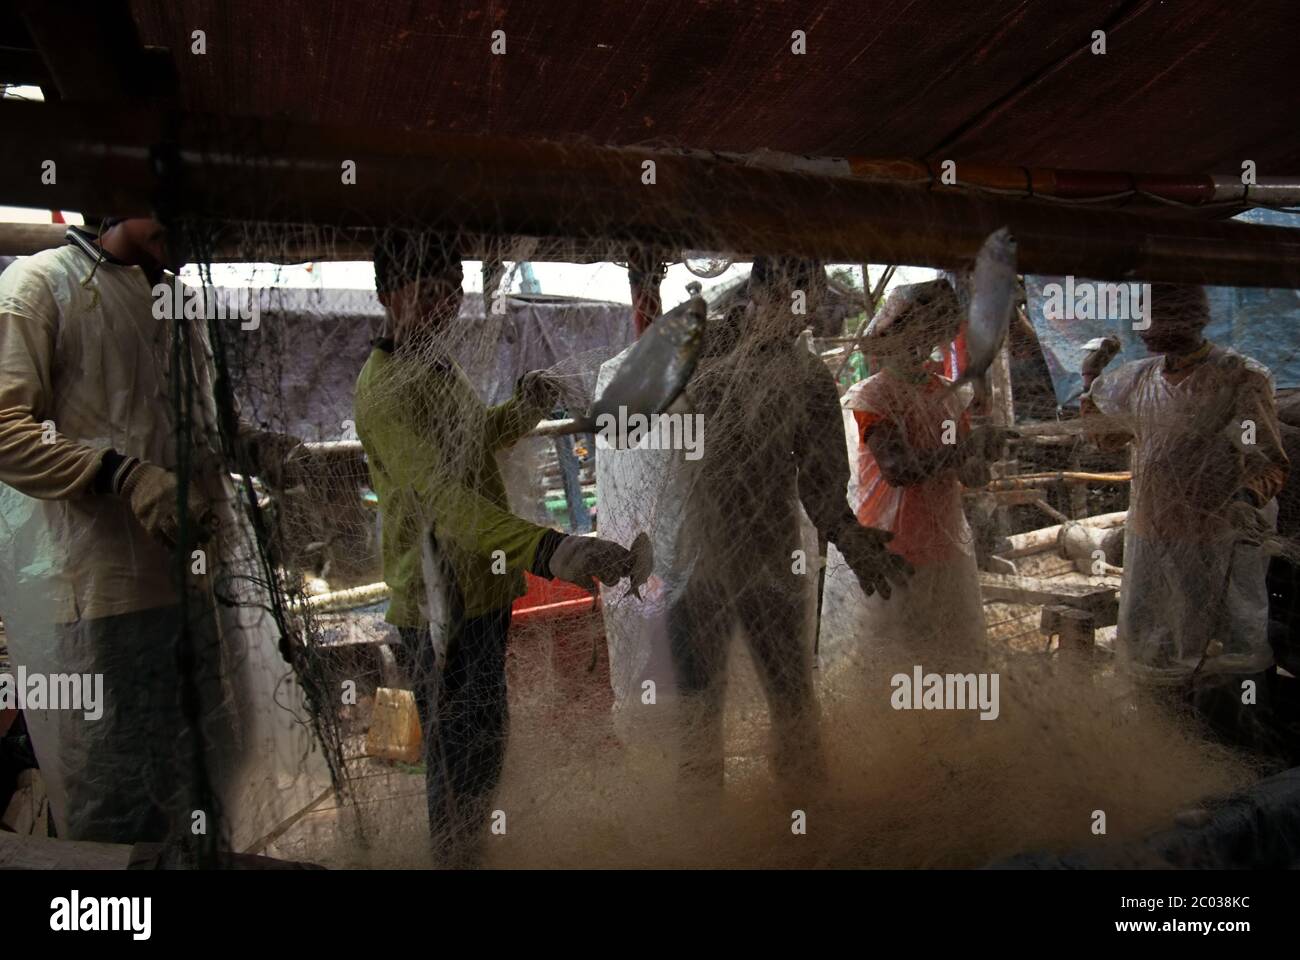 Pêcheurs collectant les poissons capturés à partir d'un filet de chalut sur un bateau amarré au port de pêche communautaire de Cilincing, dans le nord de Jakarta, en Indonésie. Banque D'Images